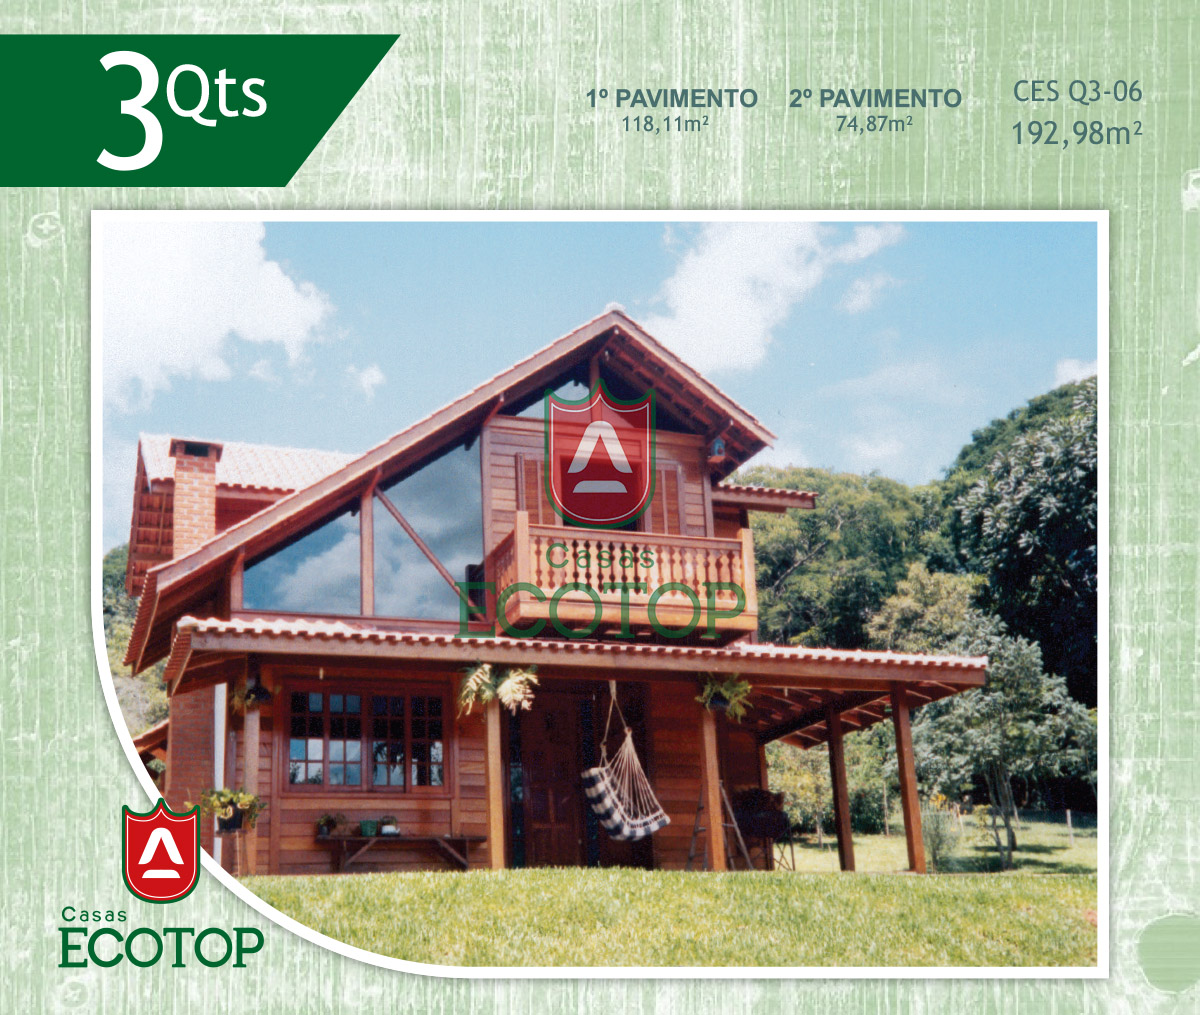 ces-06-fachada-casas-de-madeira-ecotop.cdr